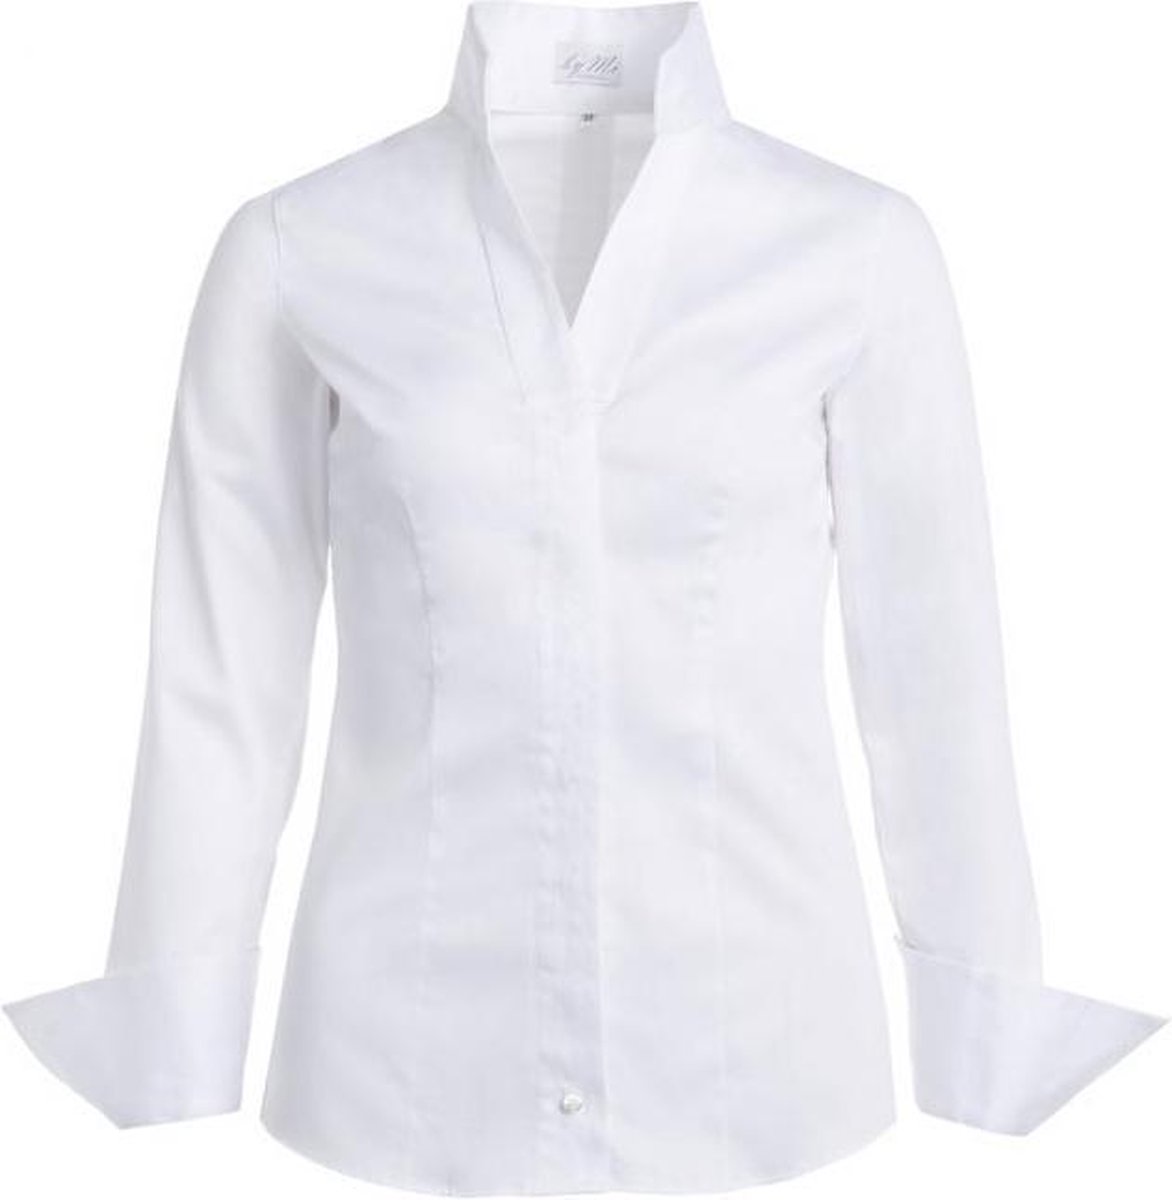 Dames blouse wit volwassen lange mouw kelkkraag sta kraagje egyptian cotton katoen luxe chic maat 42